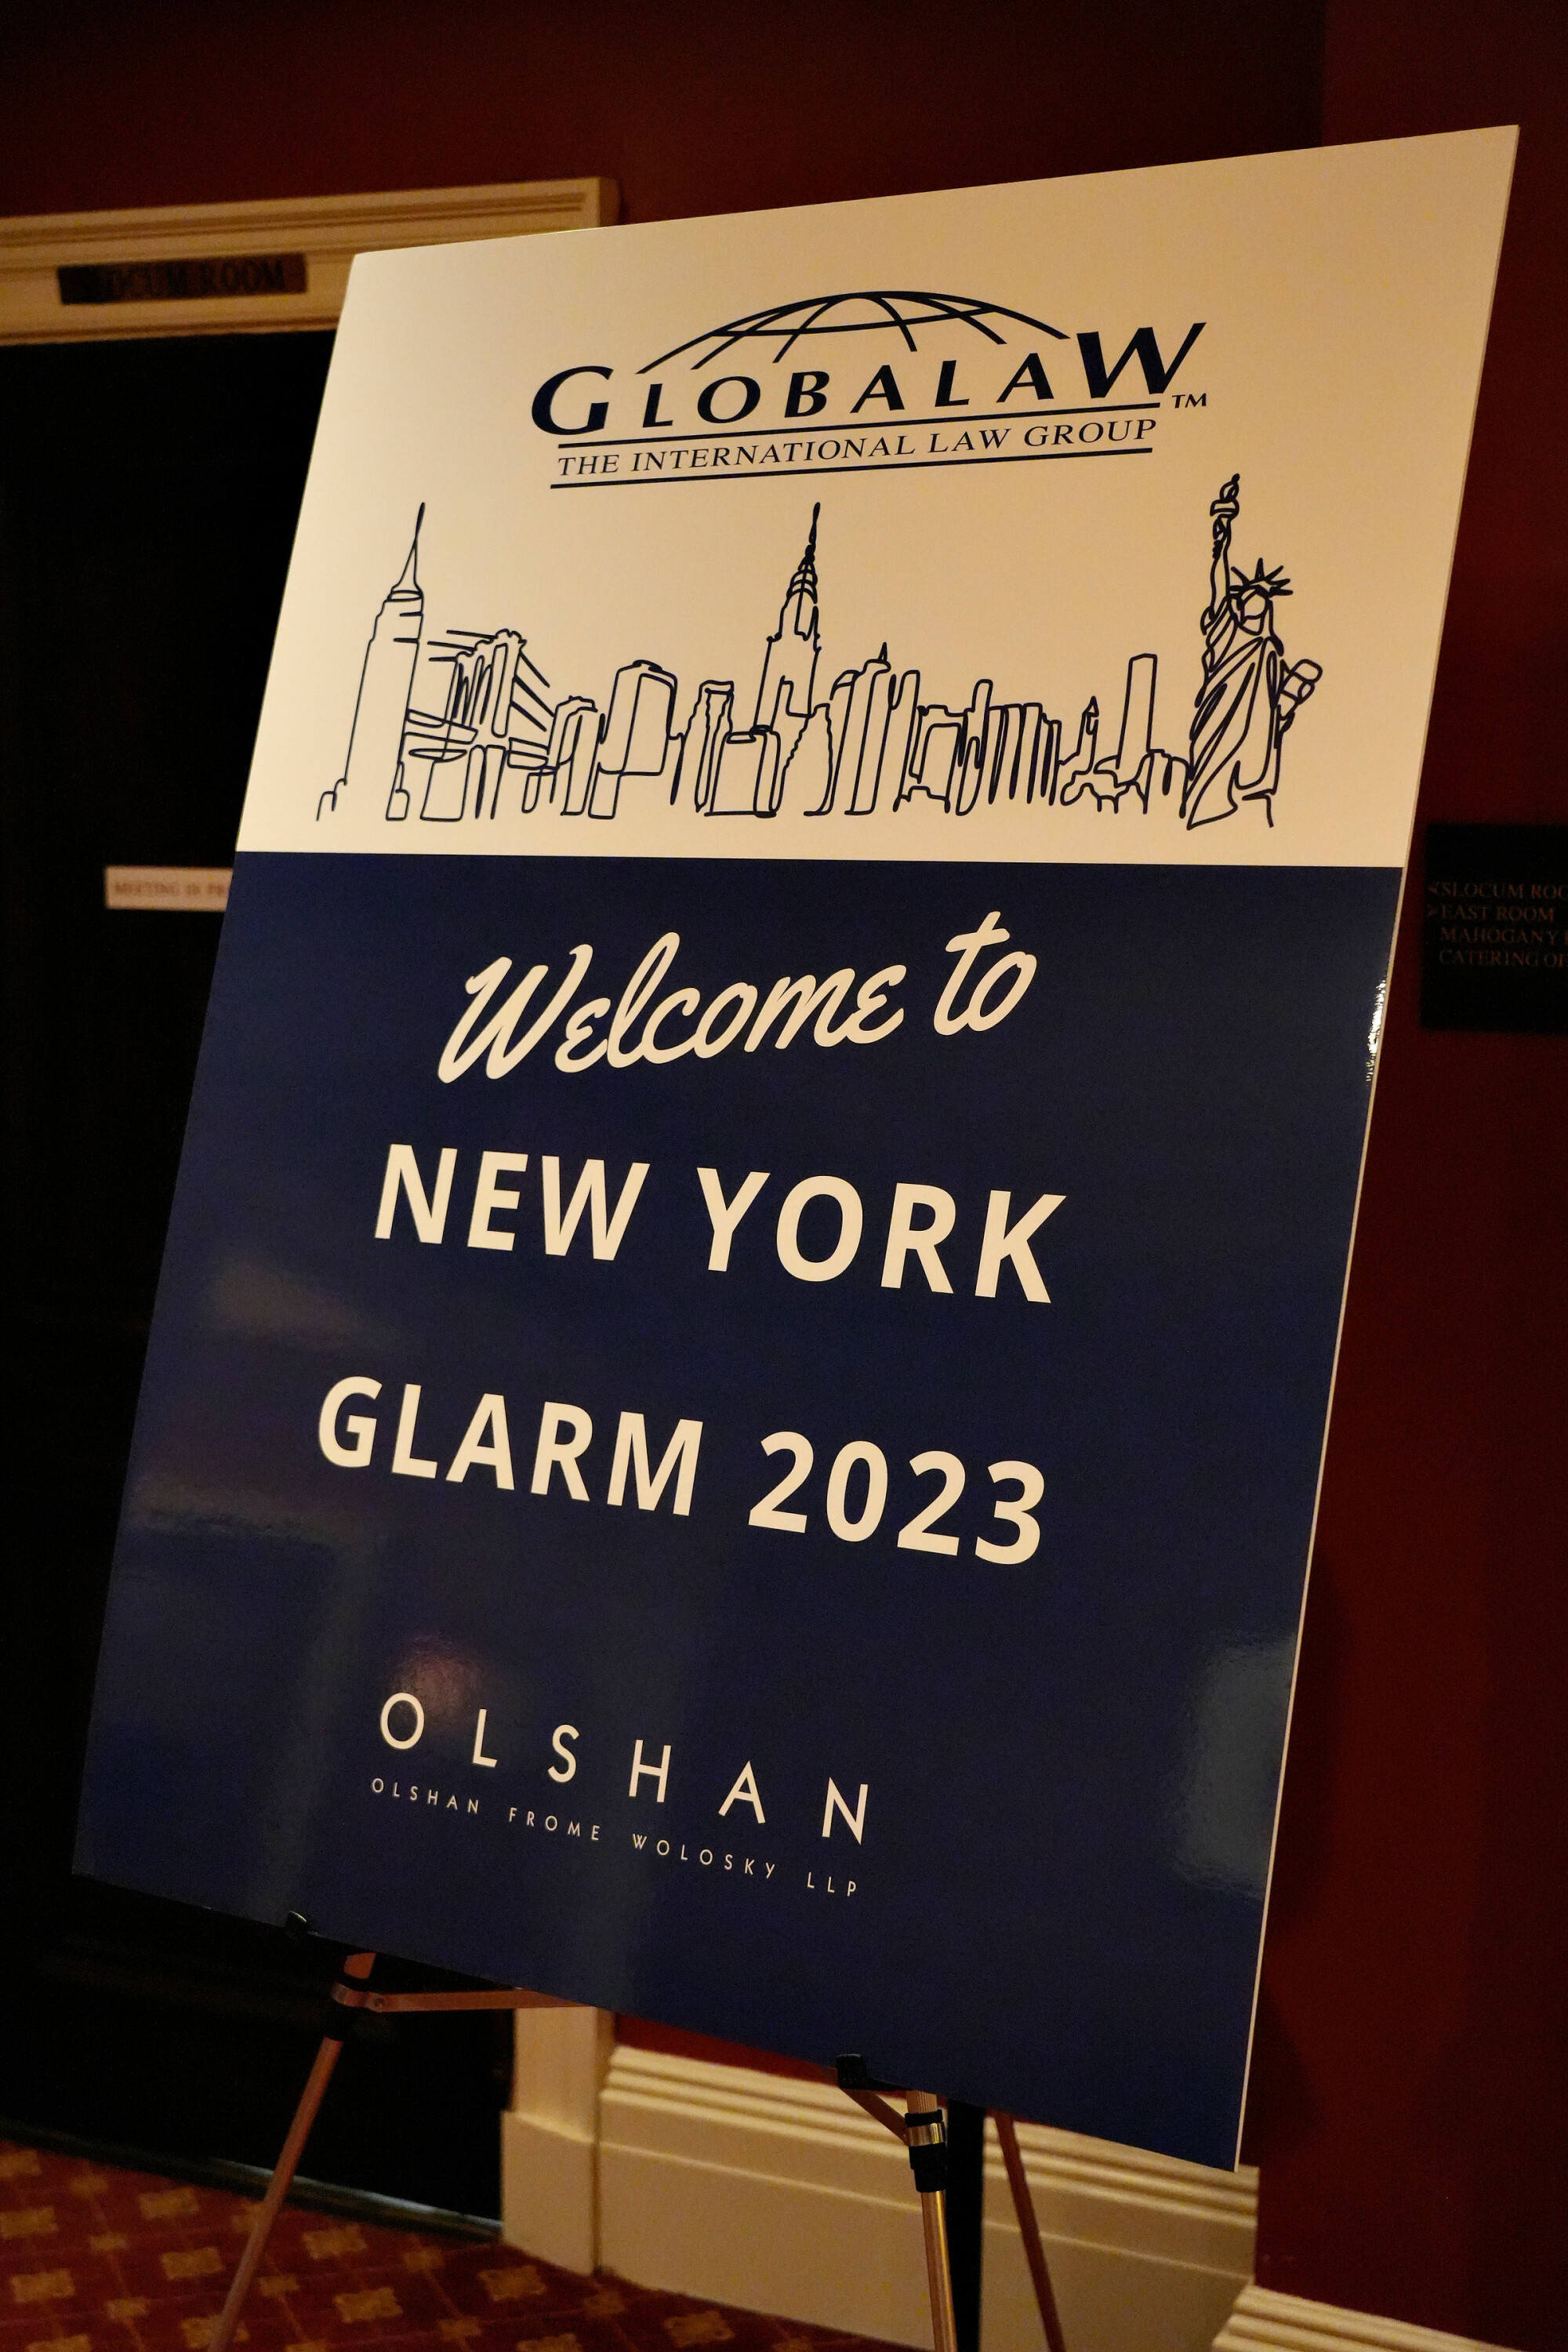 GLARM 2023